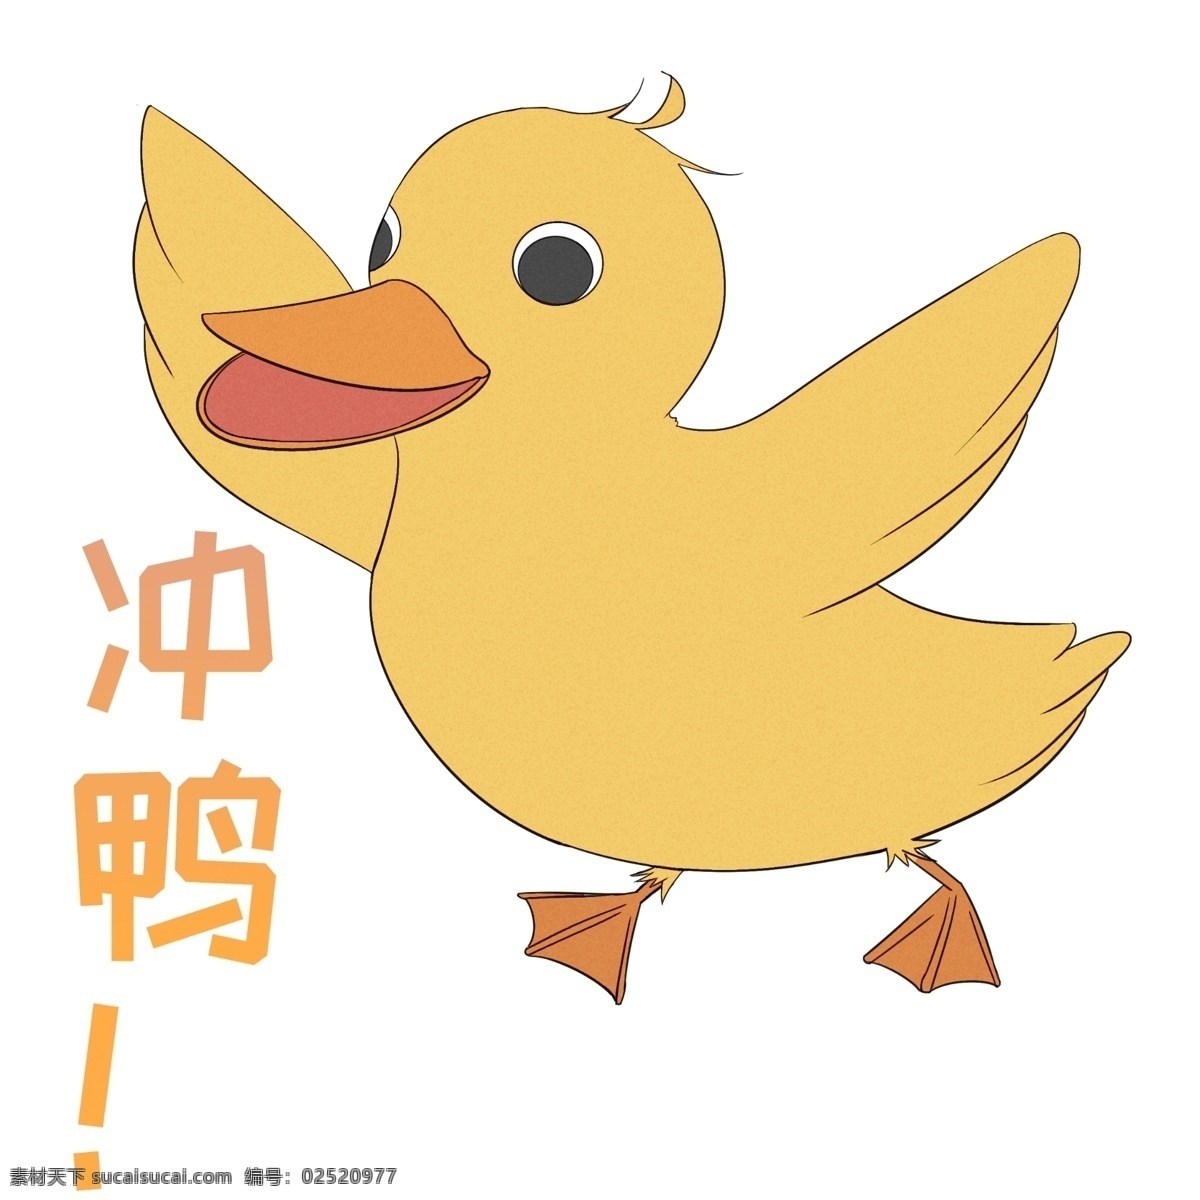 黄色 鸭子 鸭 插画 可爱的鸭子 手绘鸭子 萌萌的鸭子 鸭子装饰 黄色的鸭子 漂亮的鸭子 网络用语冲鸭